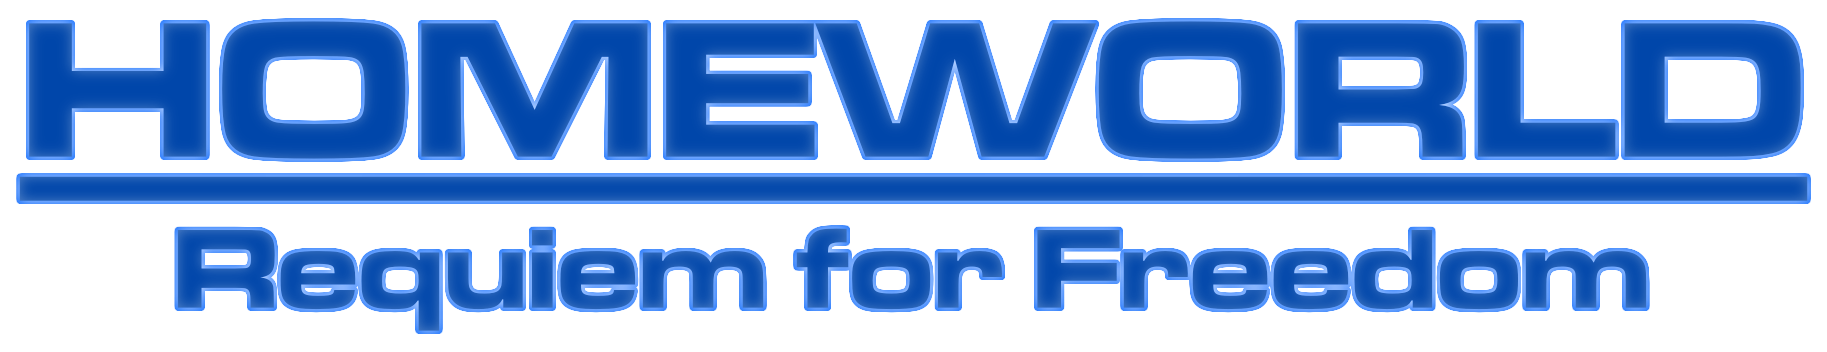 hwrm rff logo